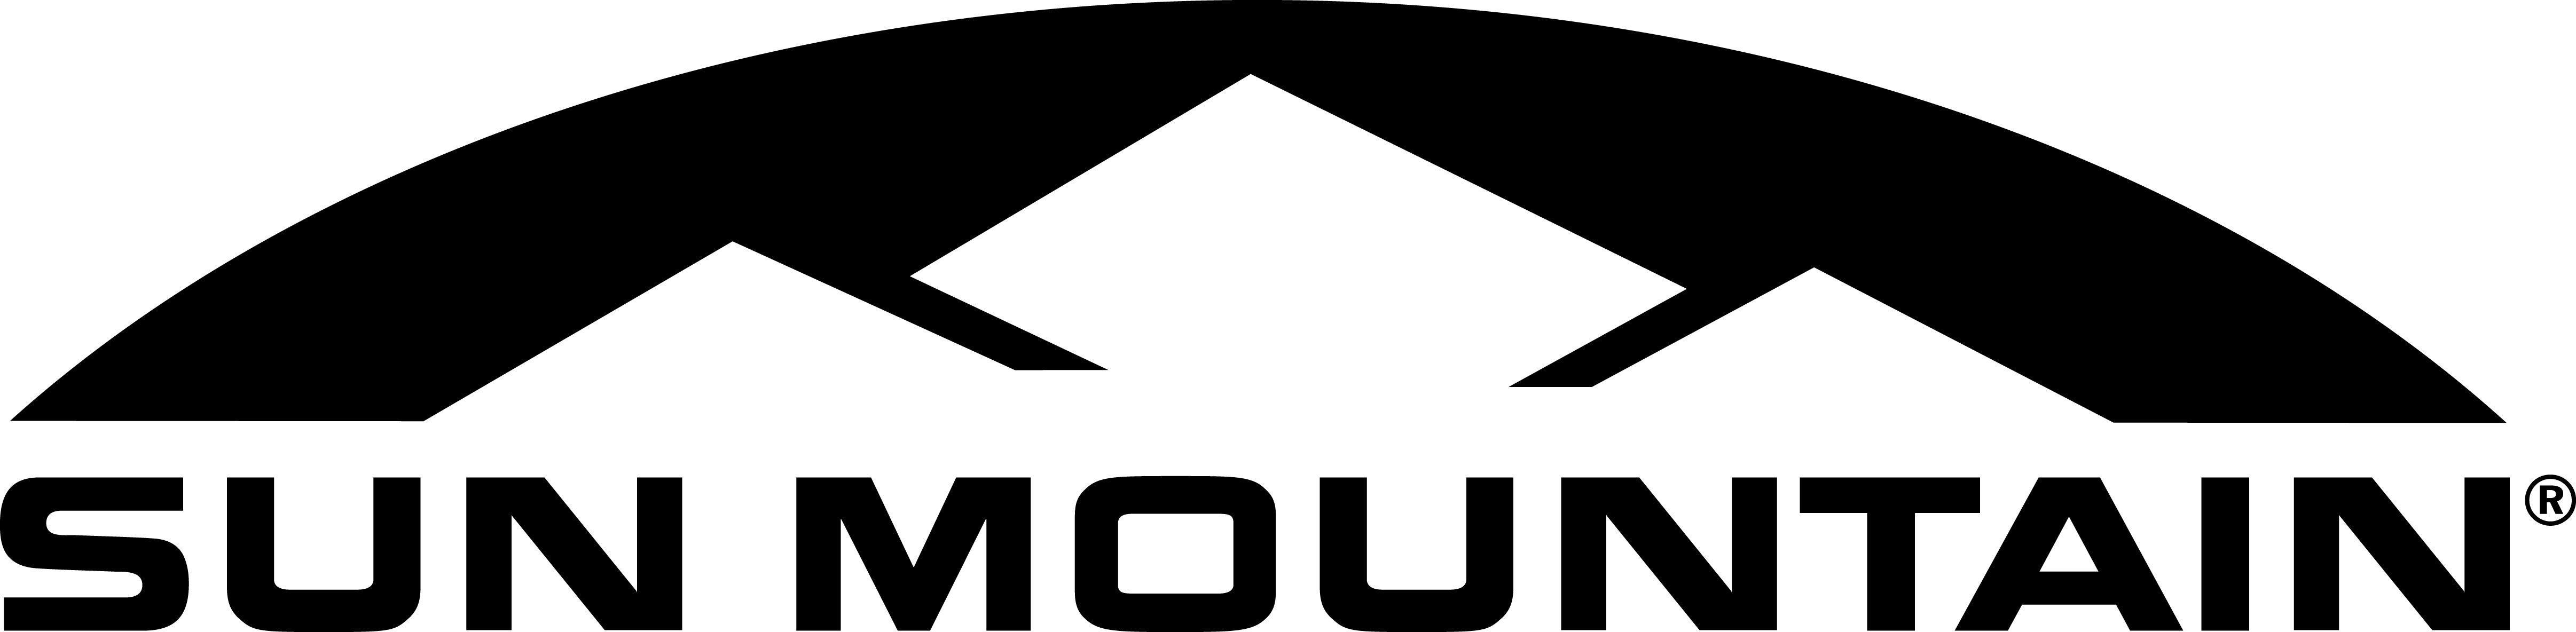 Sun and Mountain Logo - Sun and mountain Logos